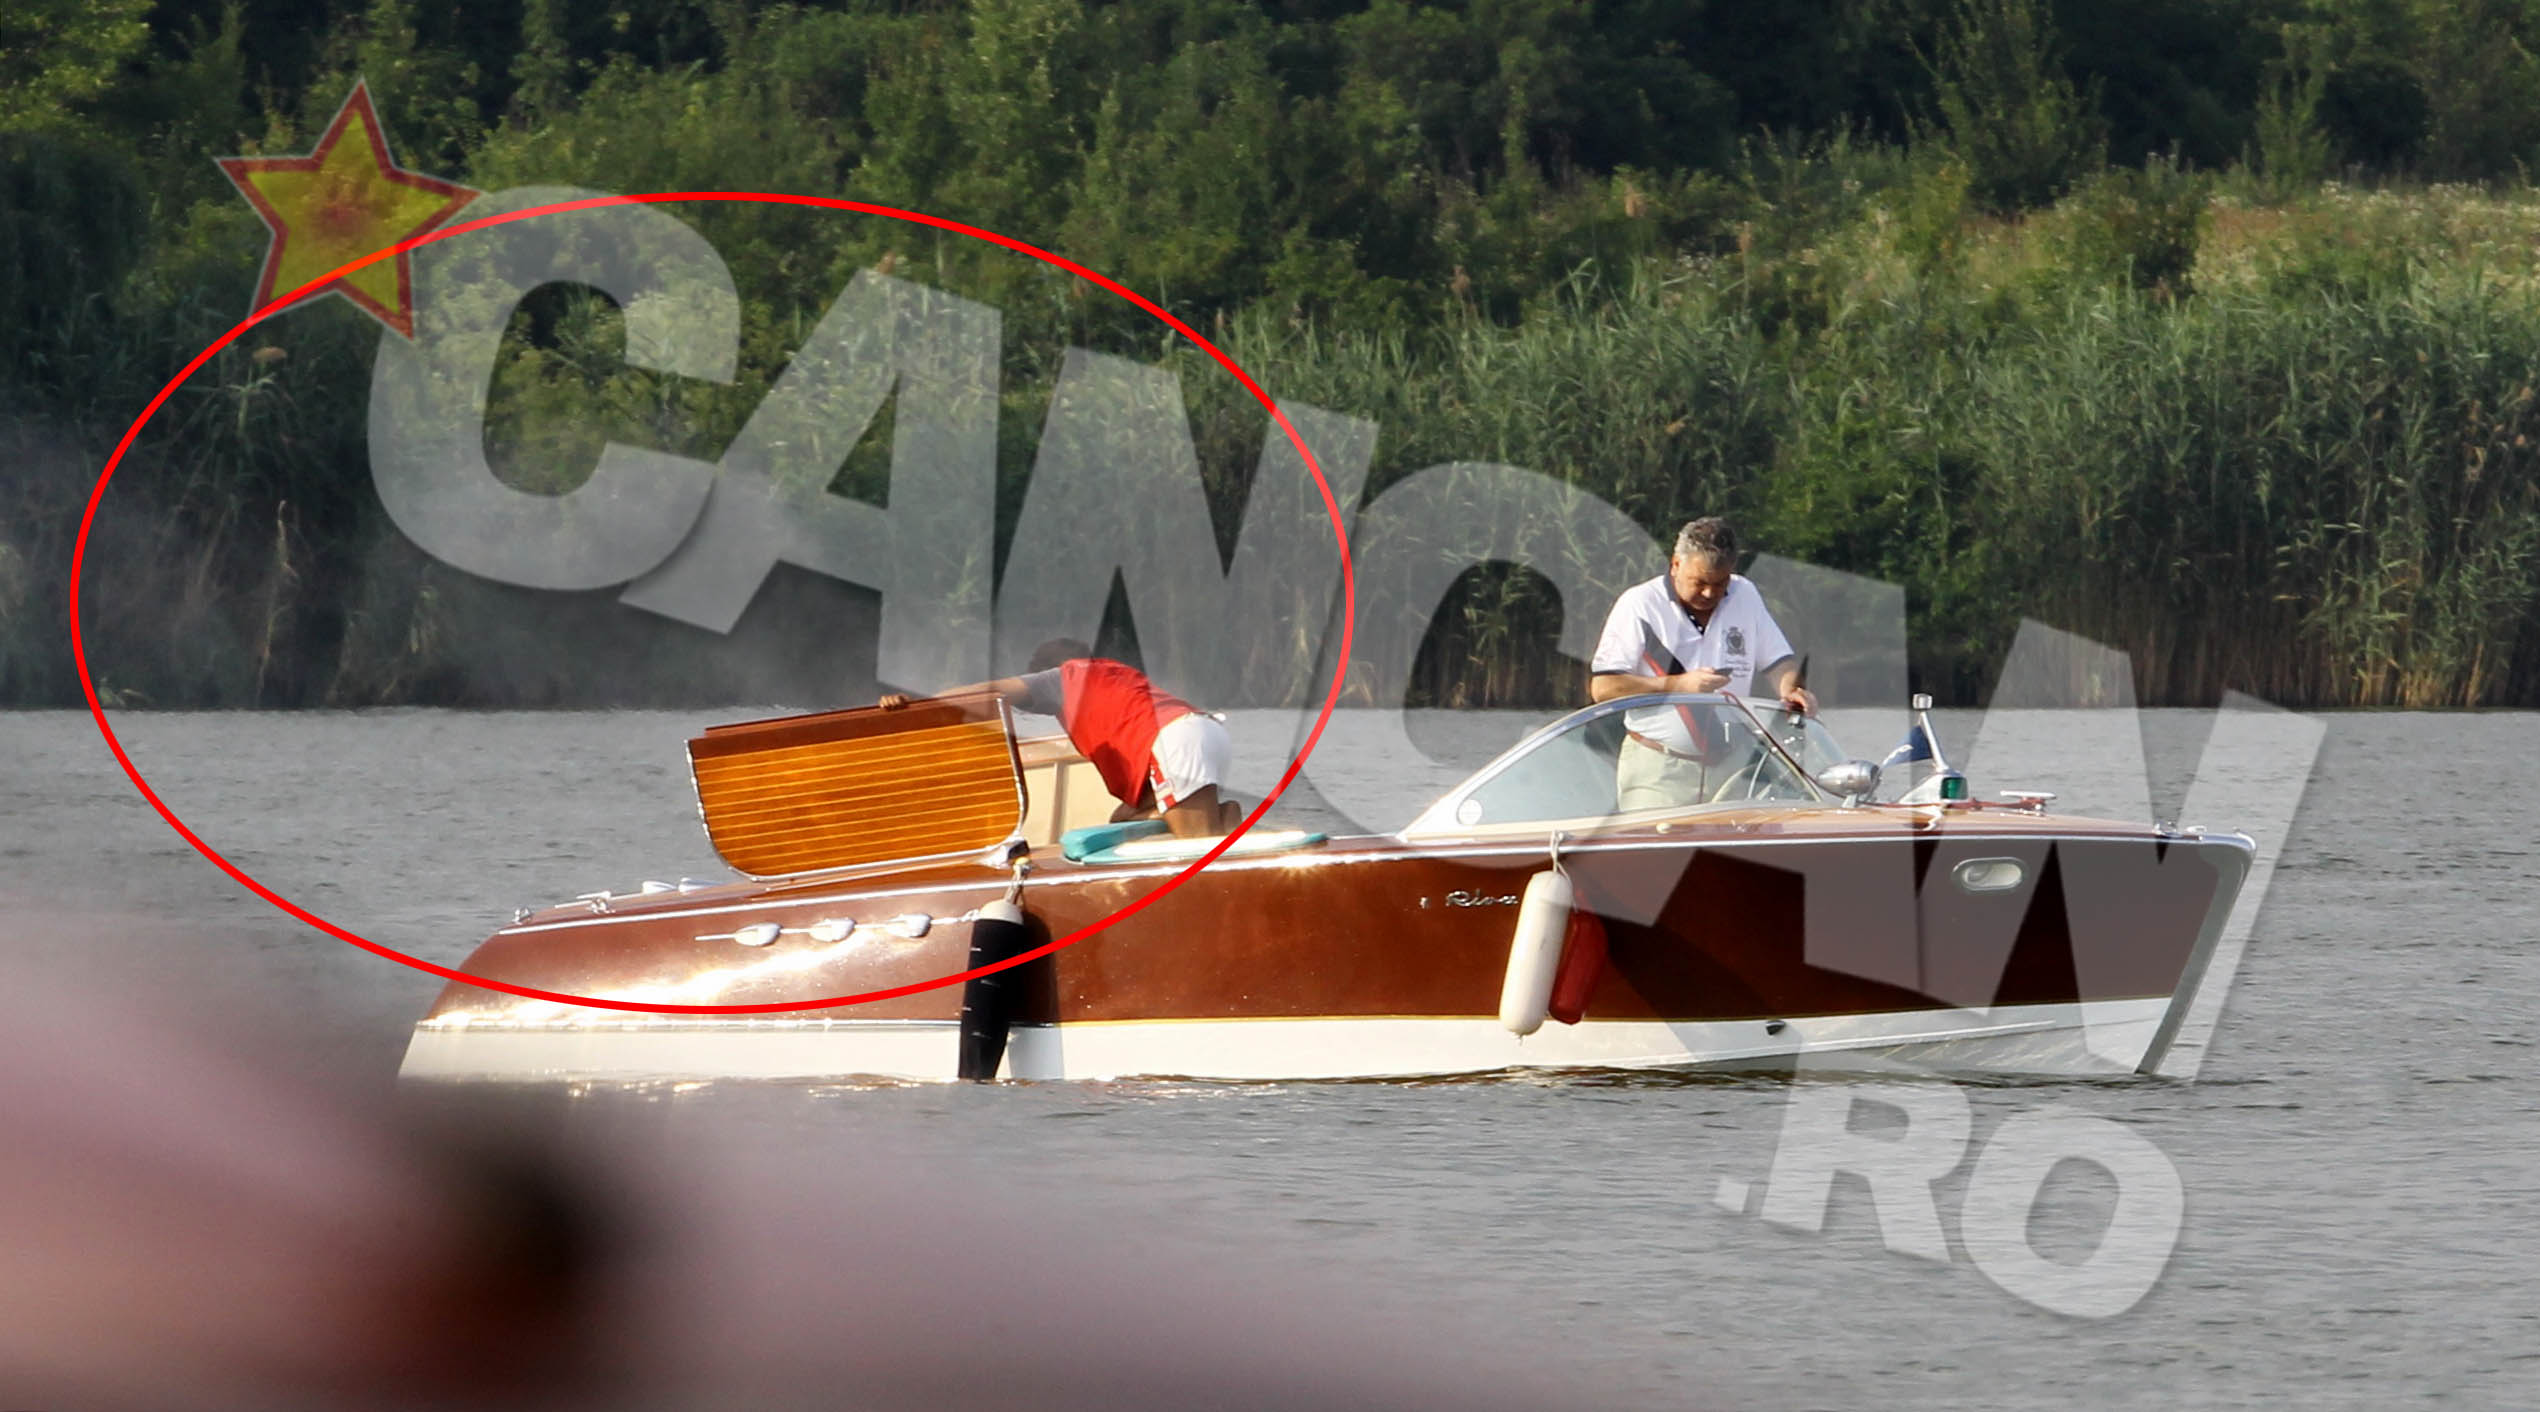 Barca pe care milionarul a platit in jur de un sfert de milion de euro s-a oprit brusc in mijlocul lacului, motorul scotand un val de fum